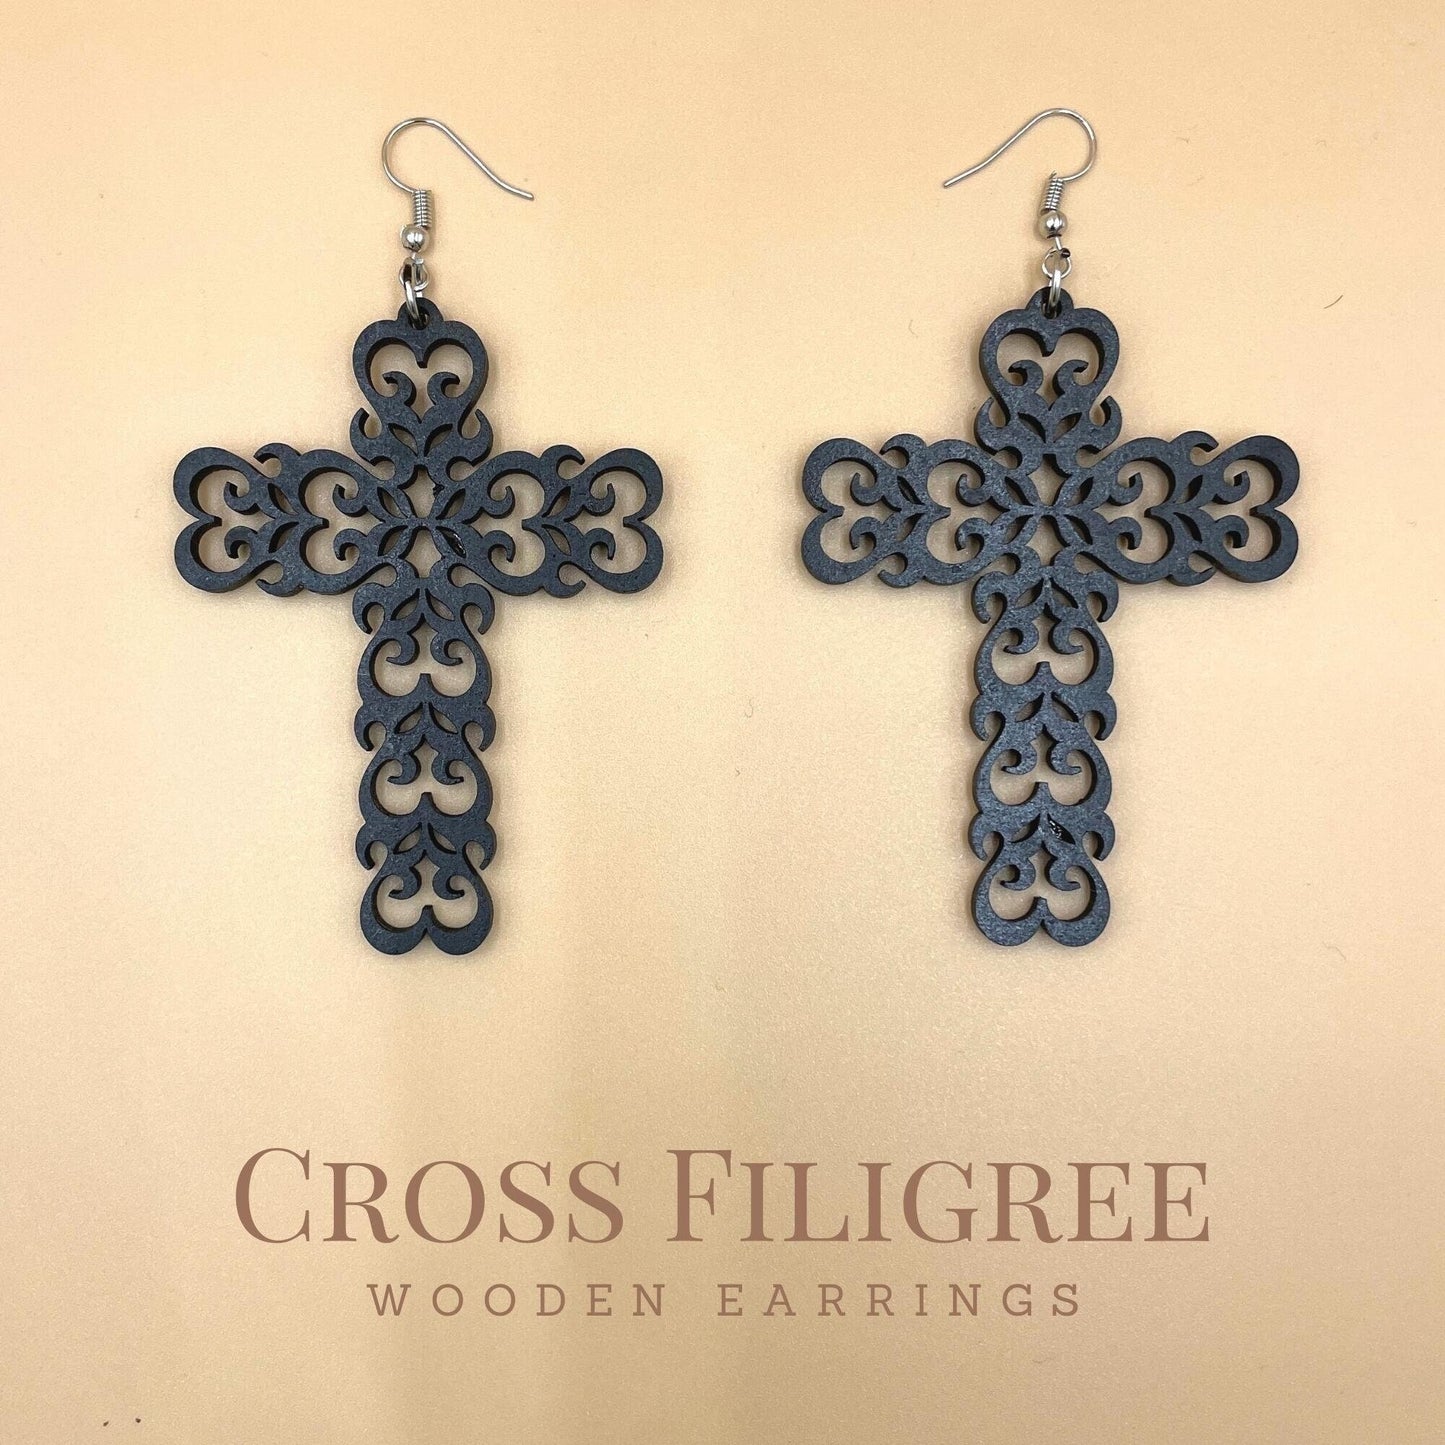 Cross Filigree Wooden Earrings